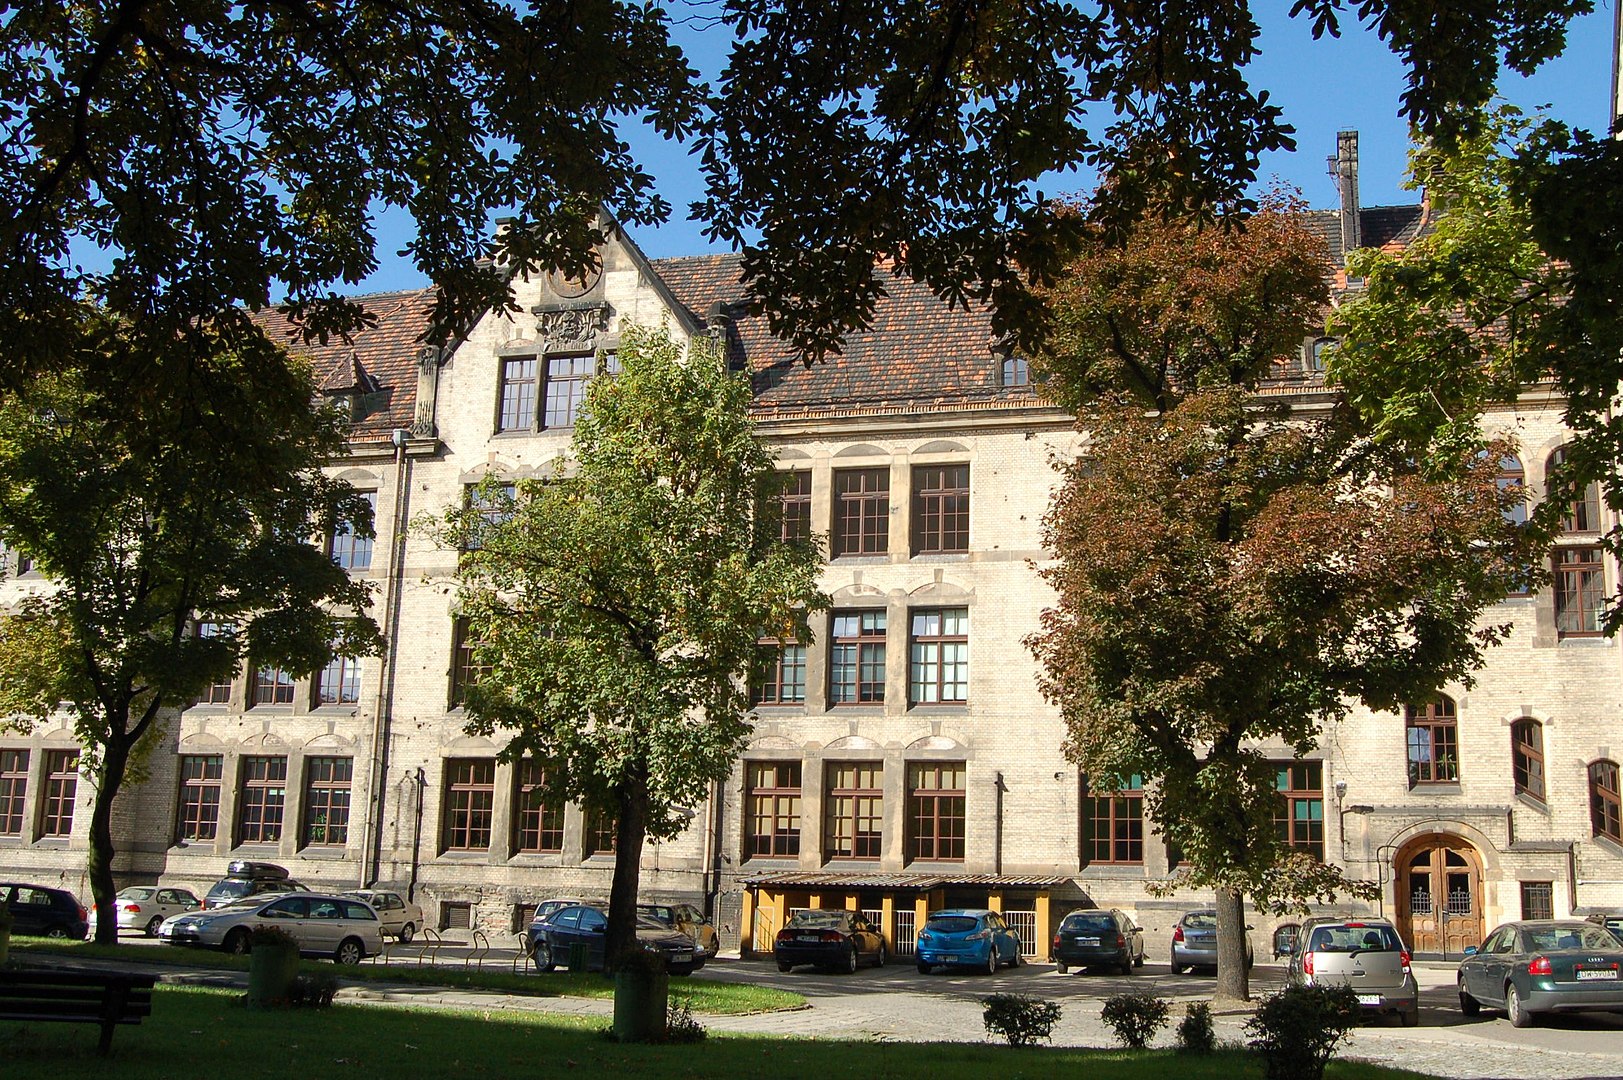 instytut psychologii uniwersytet wrocławski - By Padmayana - Praca własna, CC BY-SA 3.0 pl, https://commons.wikimedia.org/w/index.php?curid=21794483